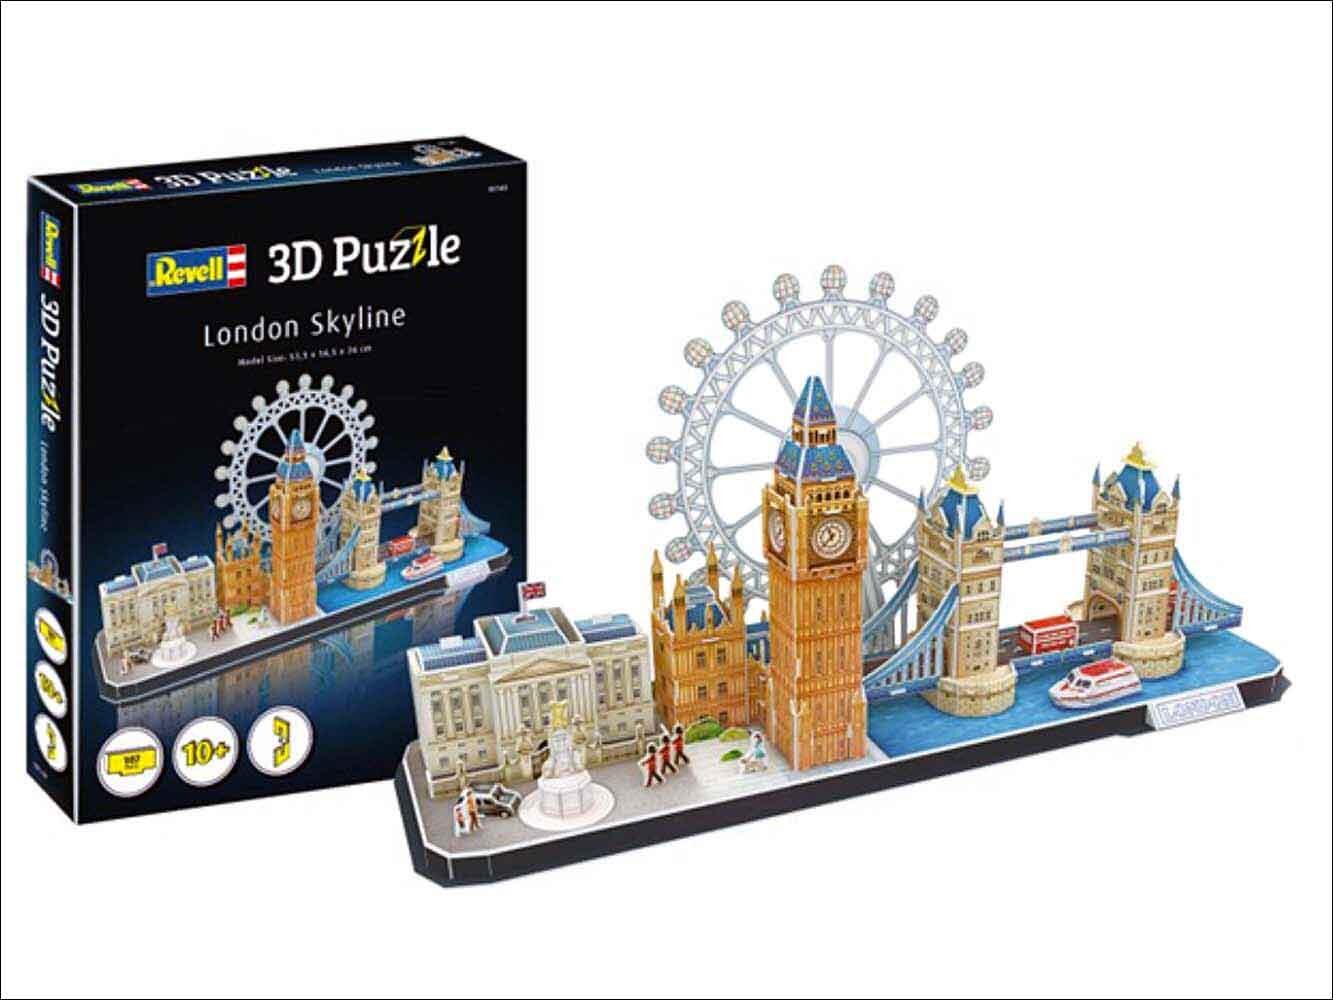 London Skyline 3D Puzzle